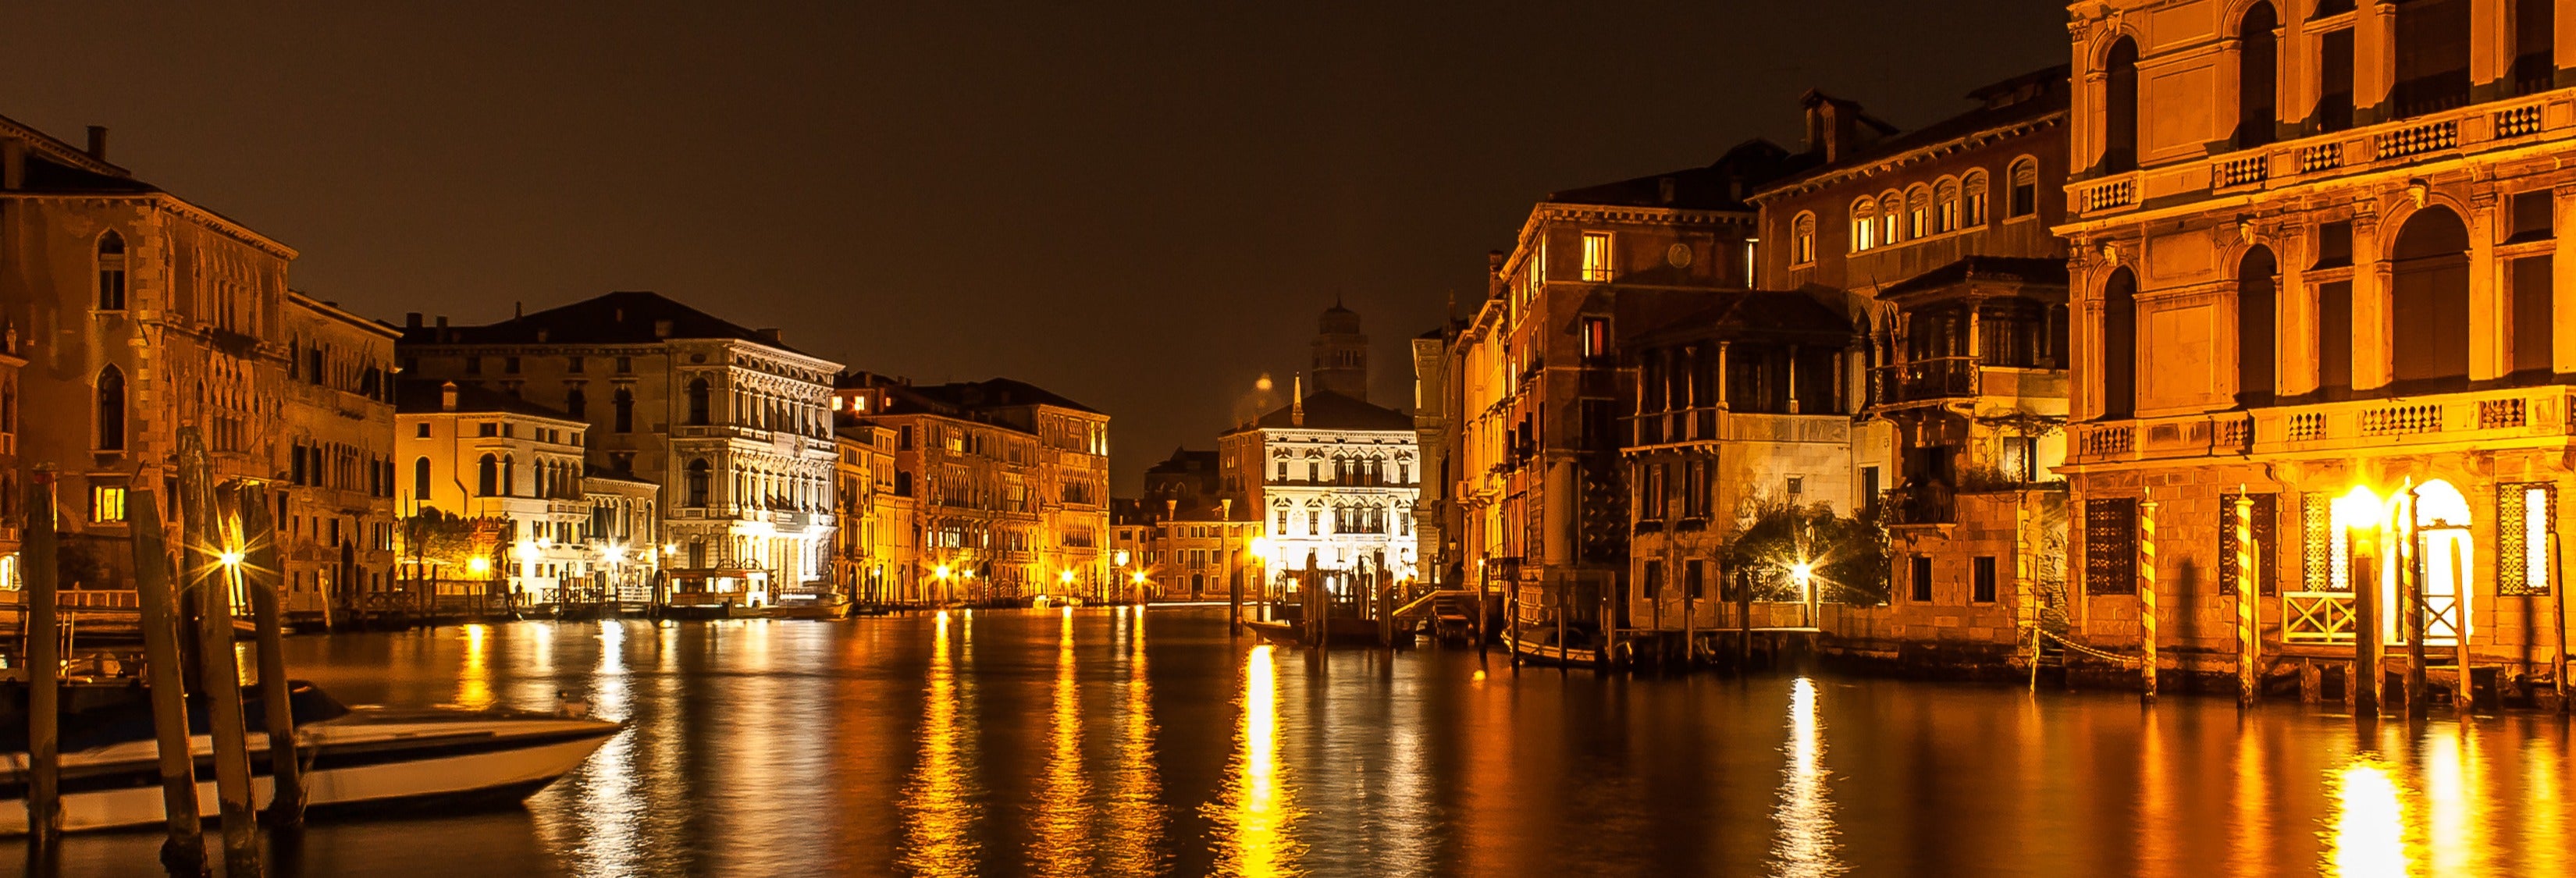 Juego de misterio: Asesinato en el Palacio de Venecia